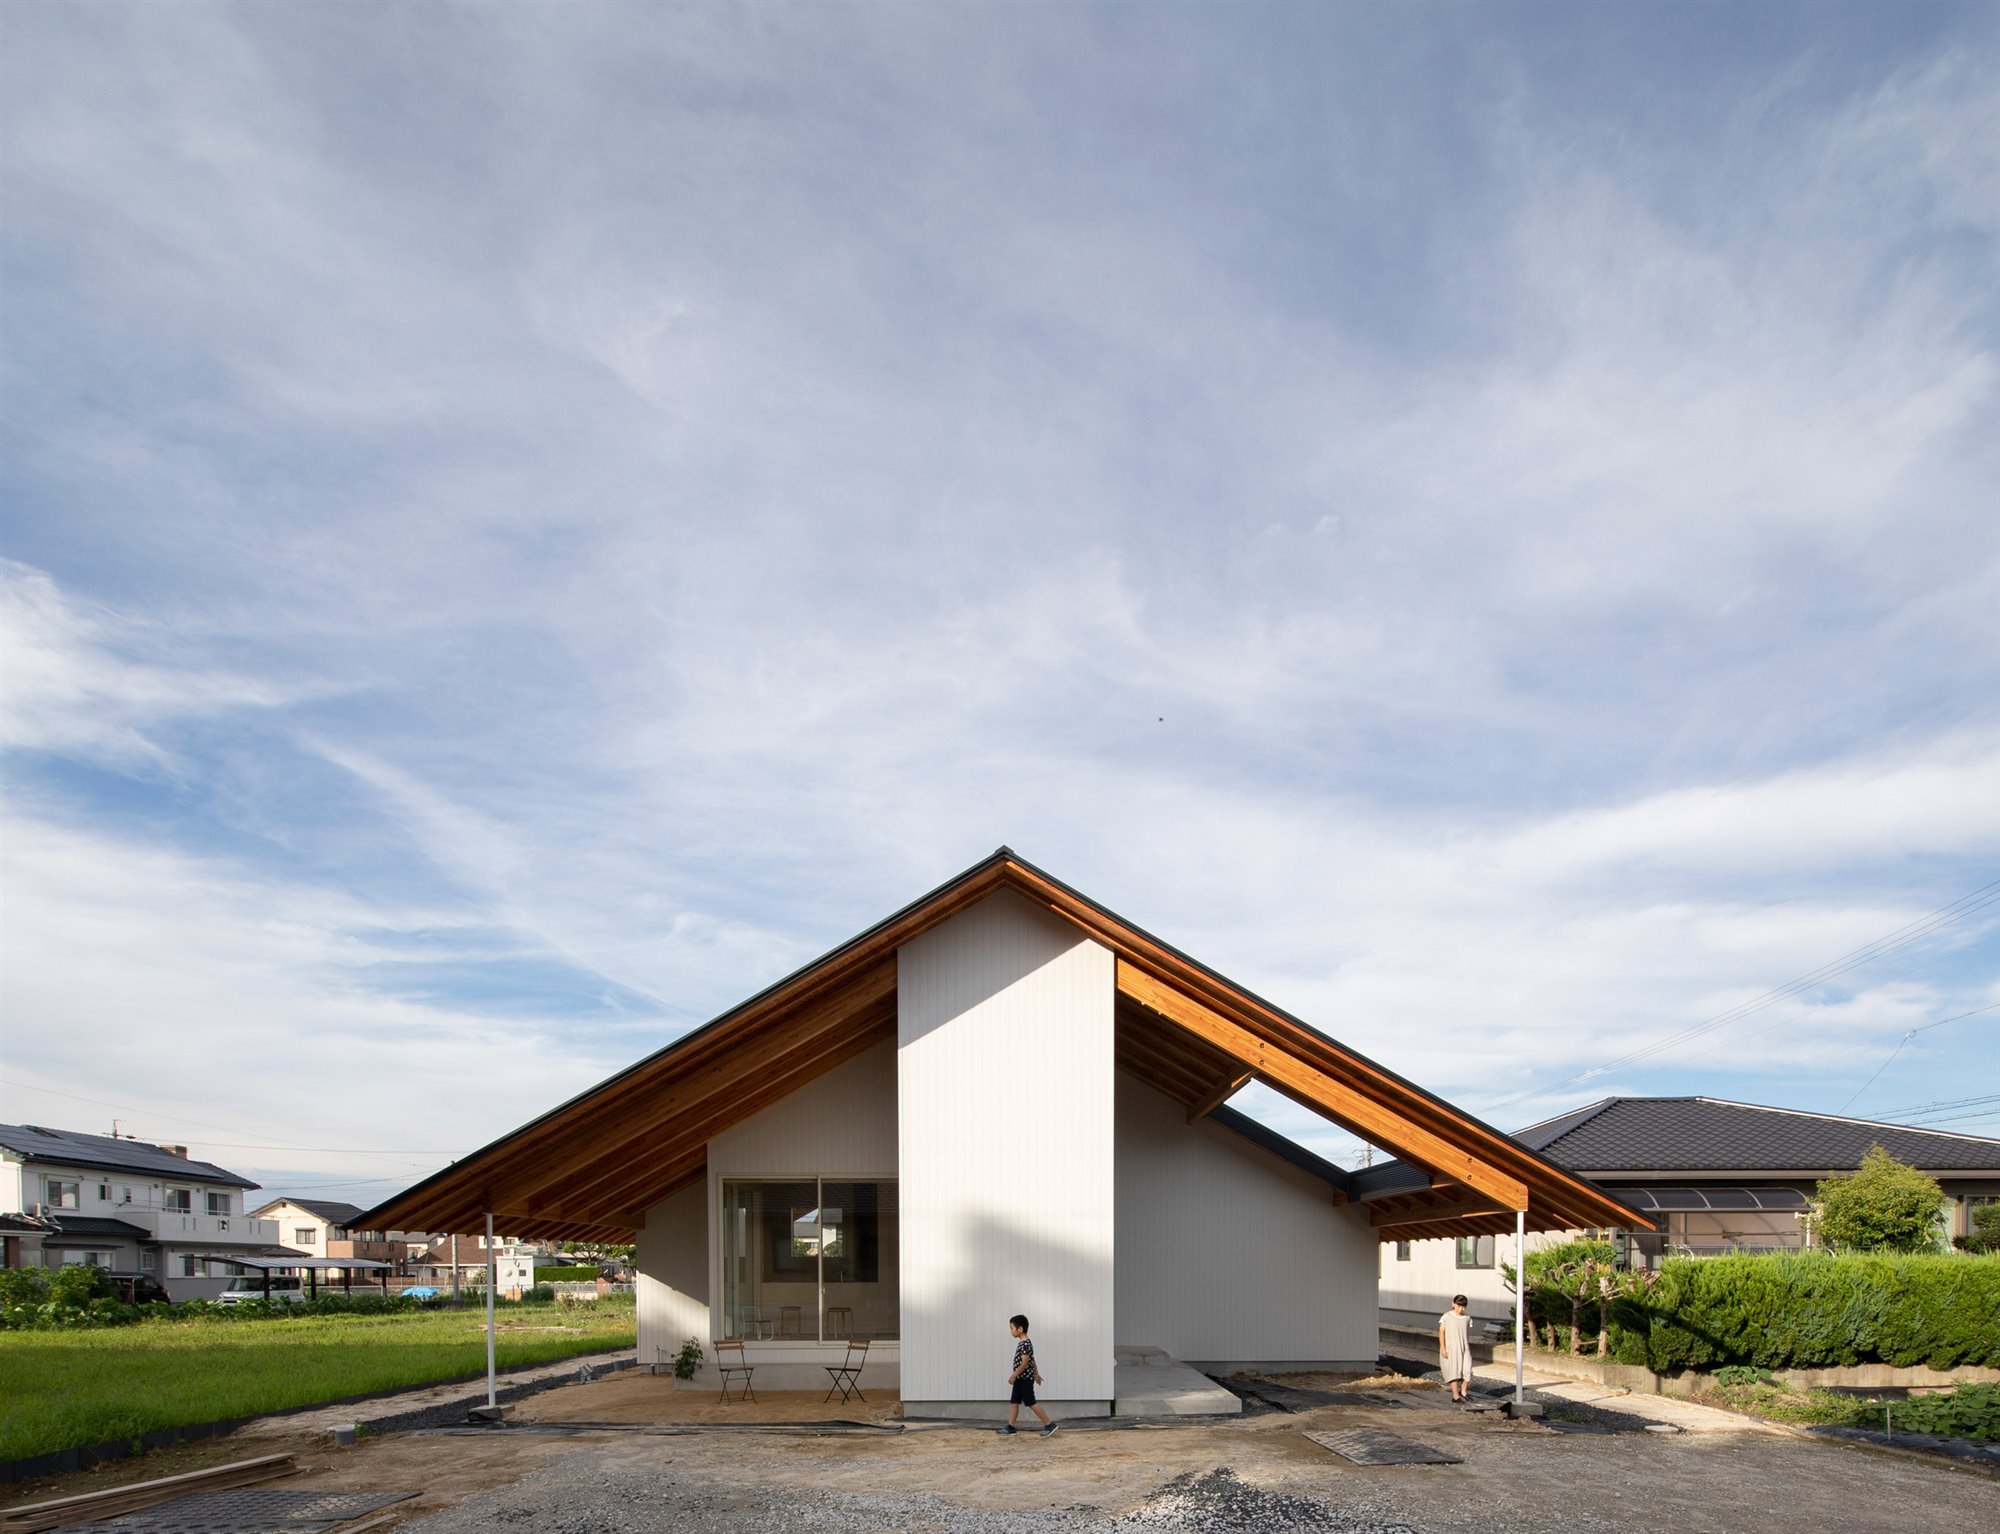 Casa en japon de los arquitectos Katsutoshi Sasaki + Associates fachada